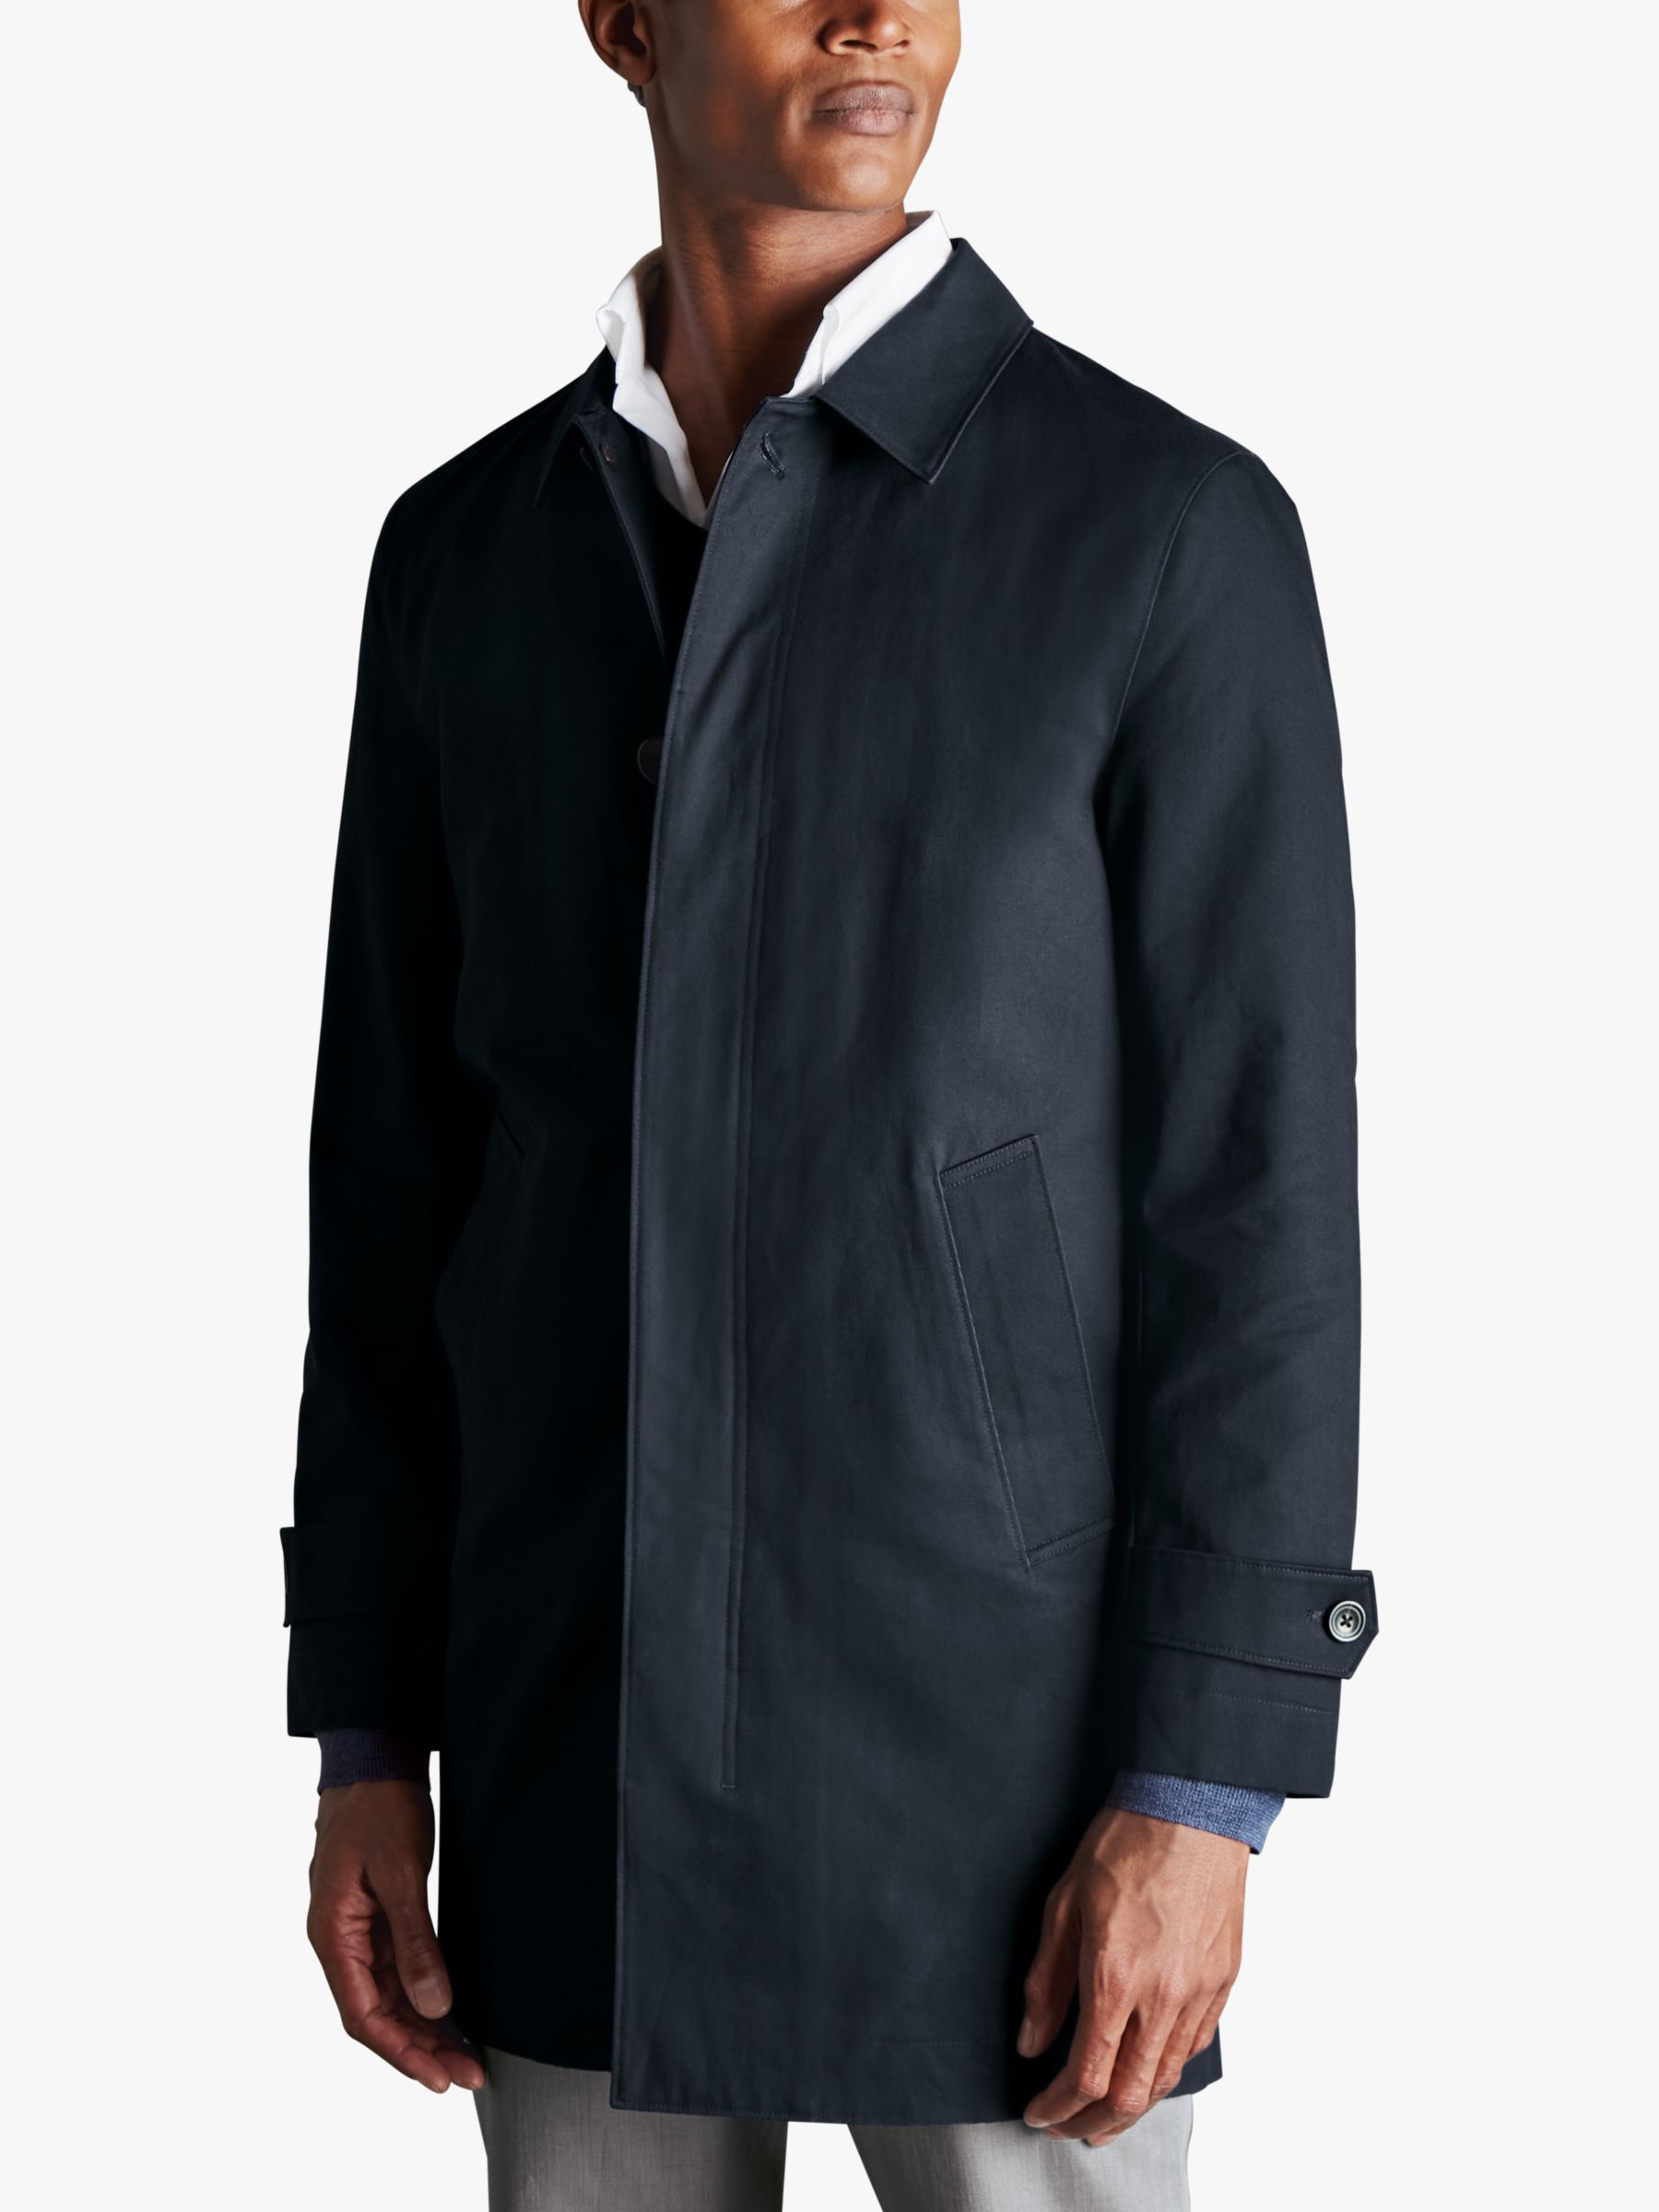 Charles Tyrwhitt Classic Showerproof Raincoat, Dark Navy, 36R